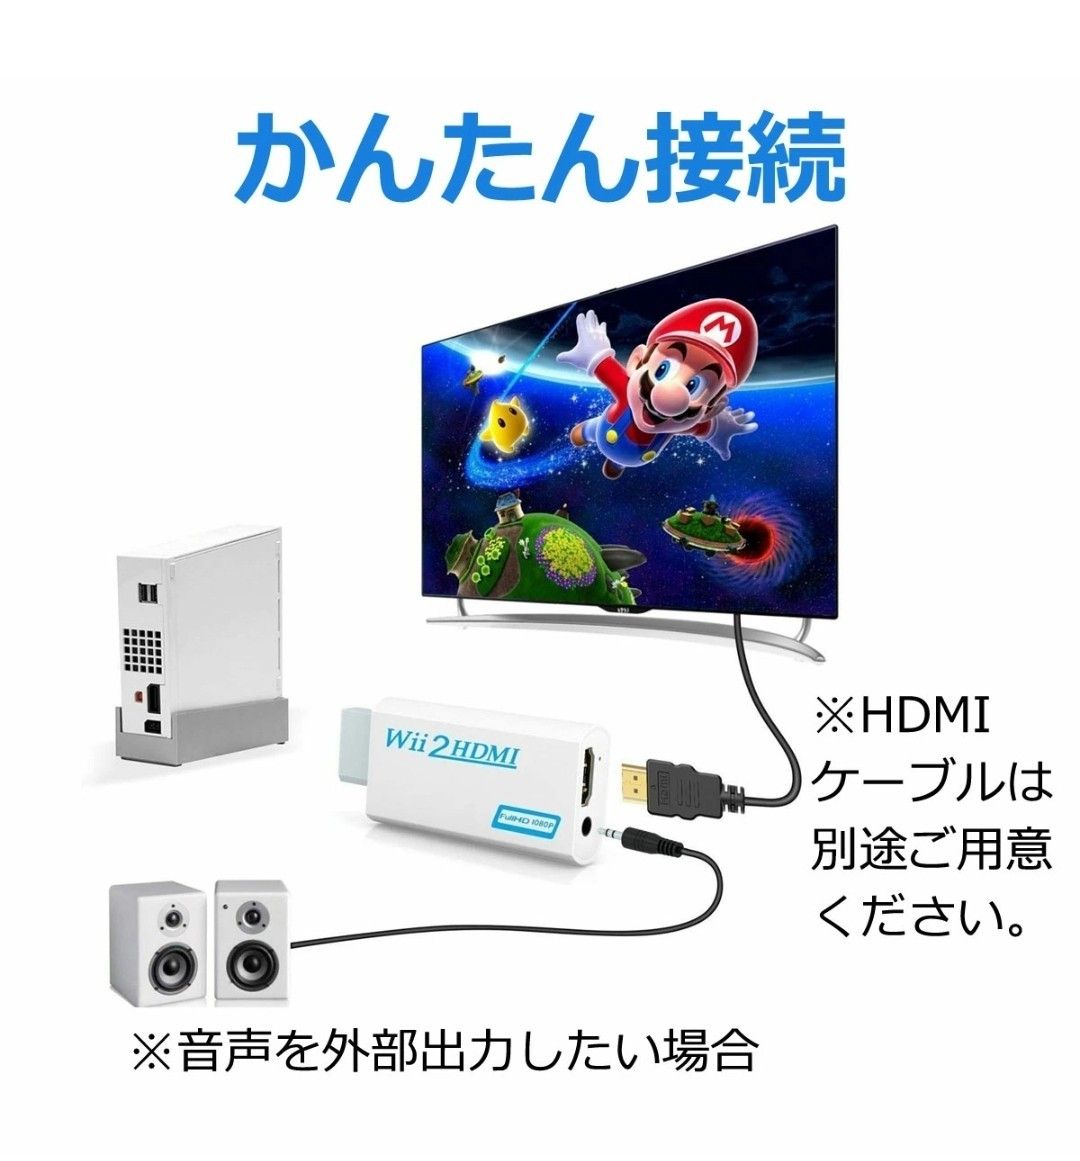 PS2 プレステ2 to HDMI 接続 コネクタ 変換 アダプター コンバータ テレビ PC モニター PlayStation2